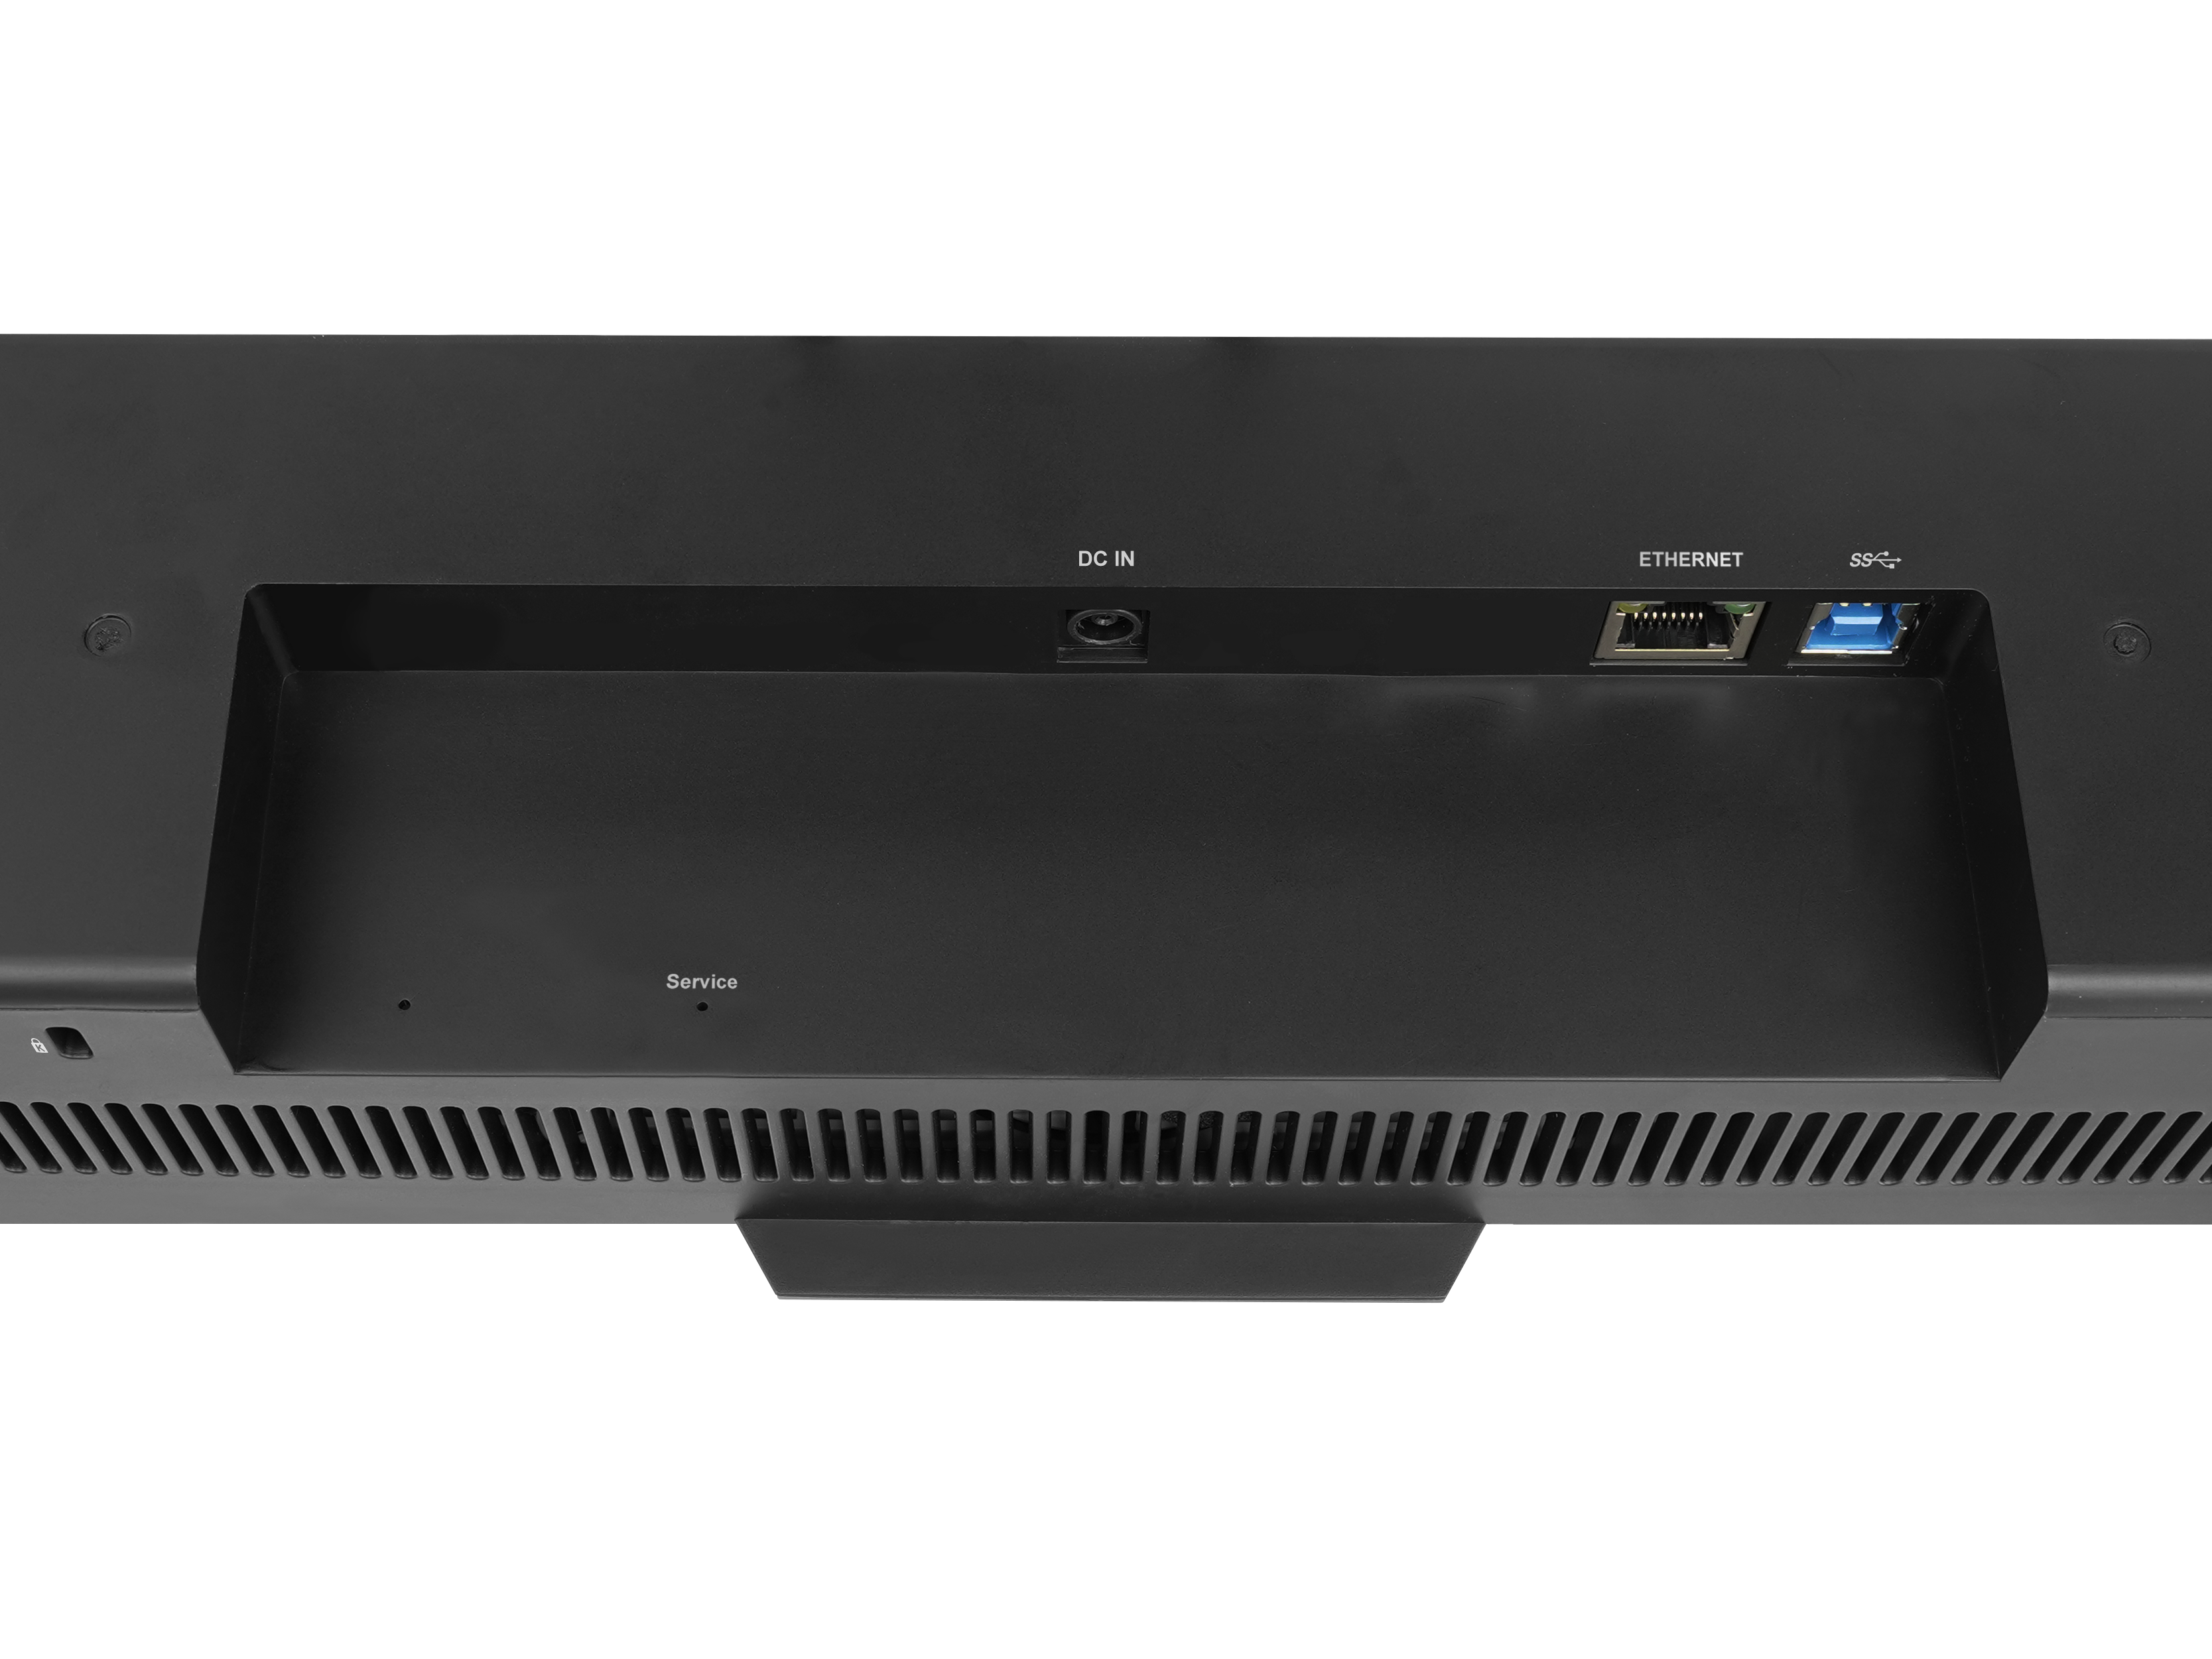 Lumens VC-MS10 All-in-One Videokonferenzsystem - Kamera & Mikrofone & Lautsprecher - 3840 x 2160 Pixel - kleine und mittelgroße Räume - Schwarz